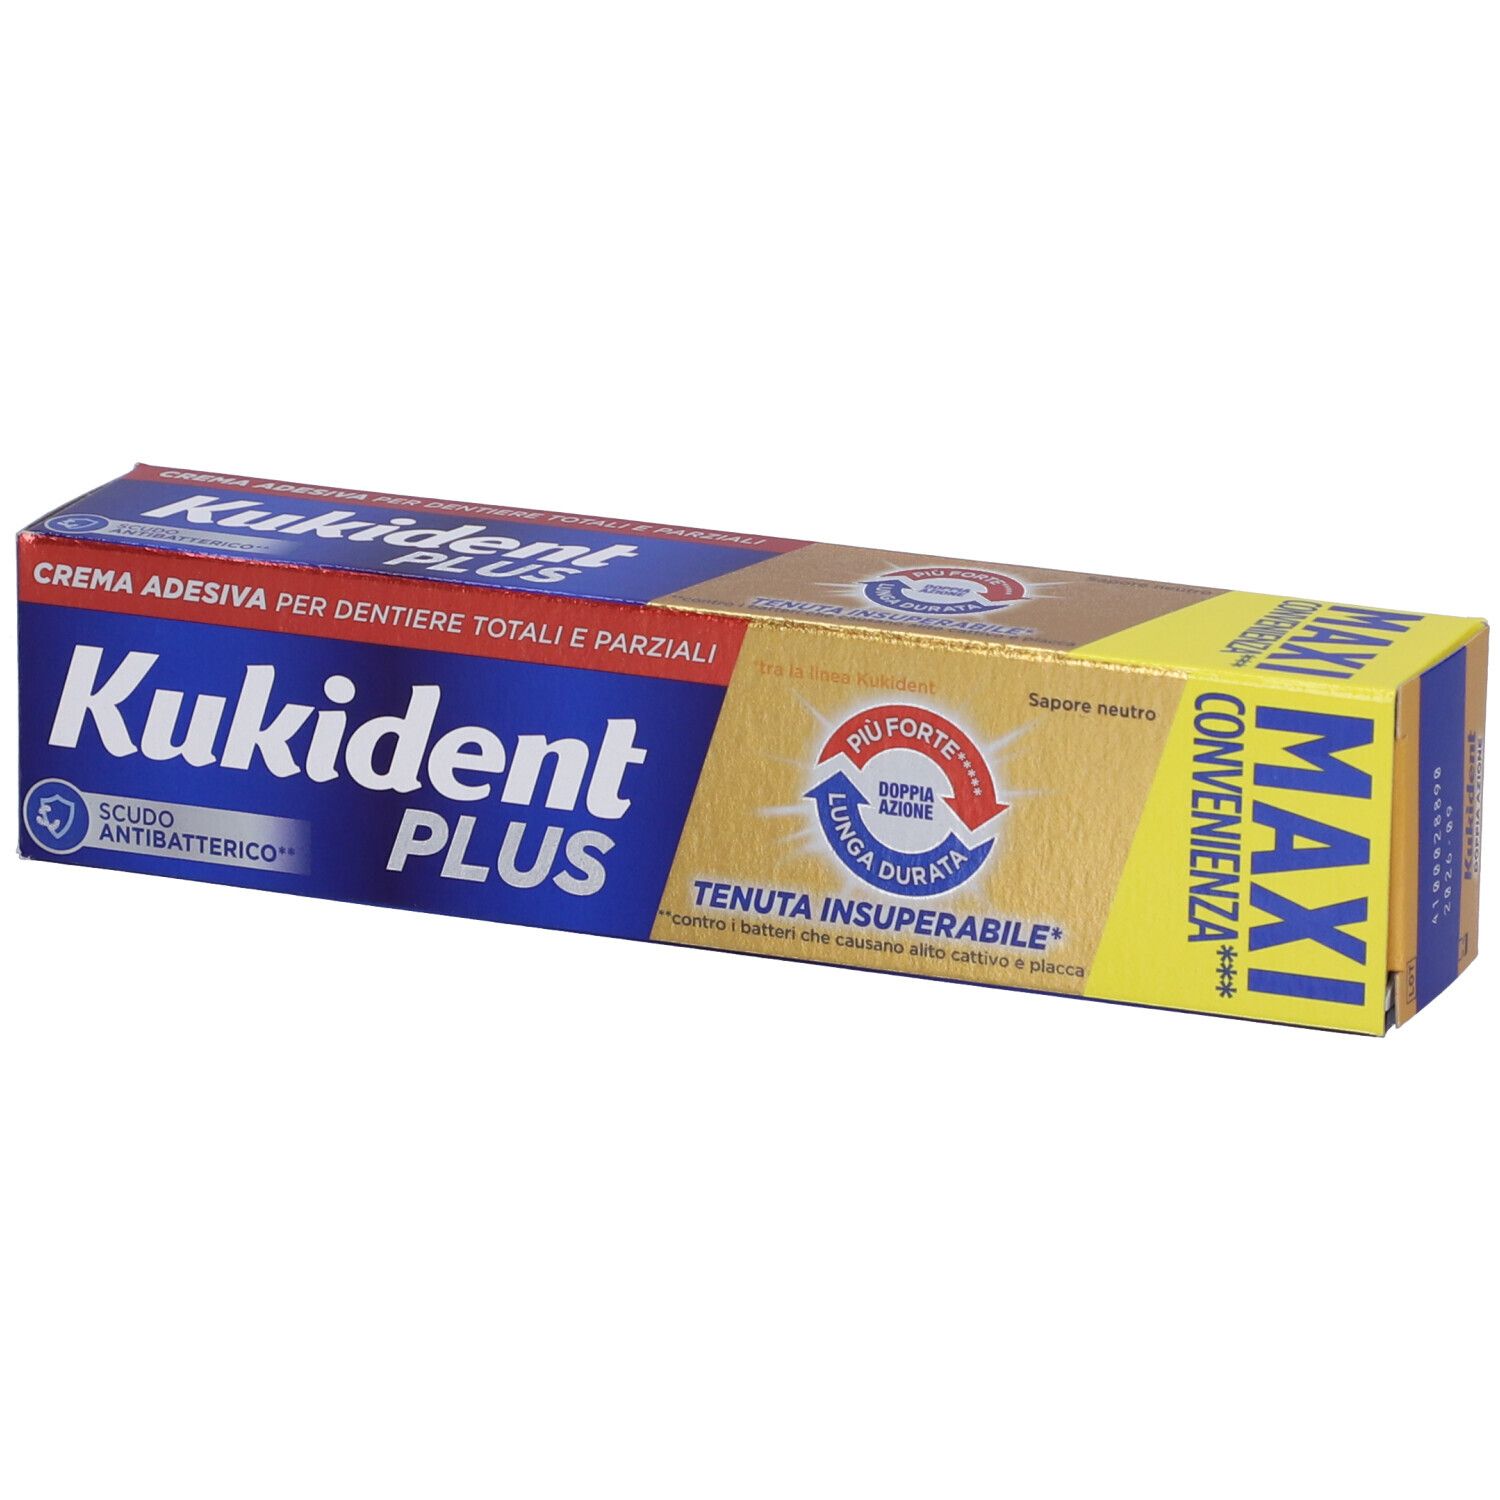 Kukident Plus Doppia Azione Crema Adesiva per Dentiere Totali e Parziali